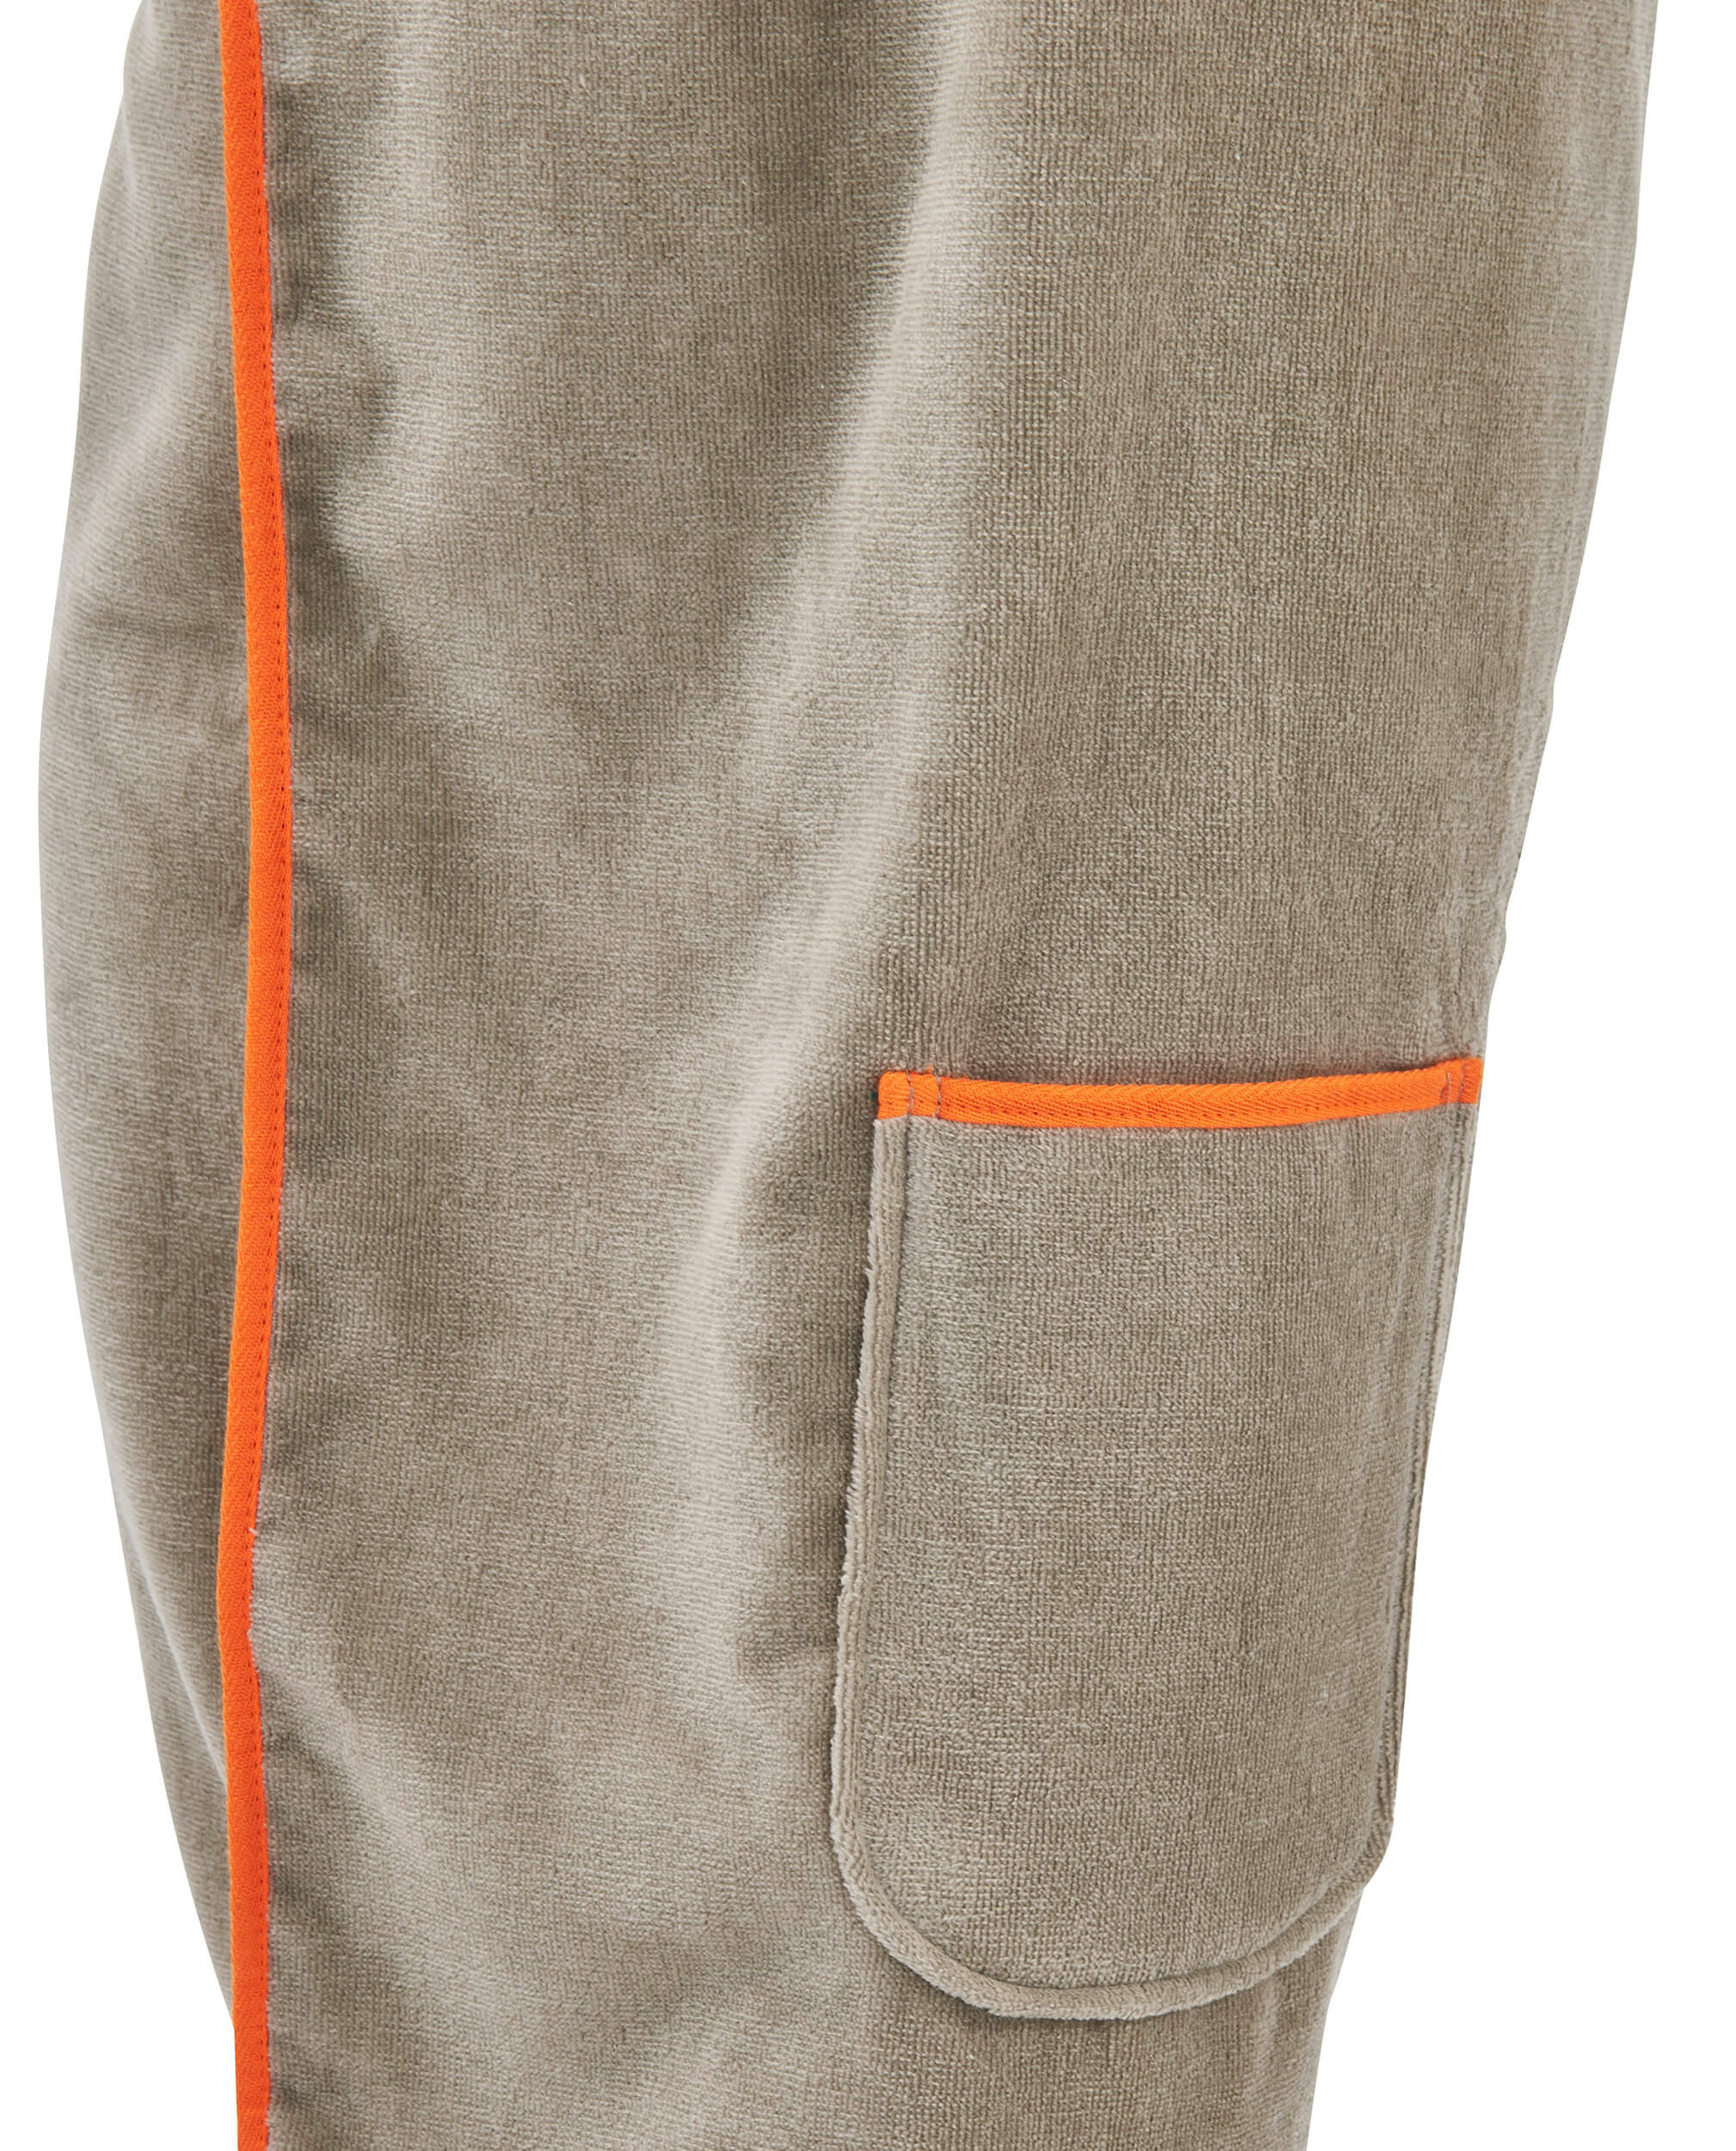 Женская юбка-килт Saunakilt Taupe ☞ Размер: 80 x 140 см